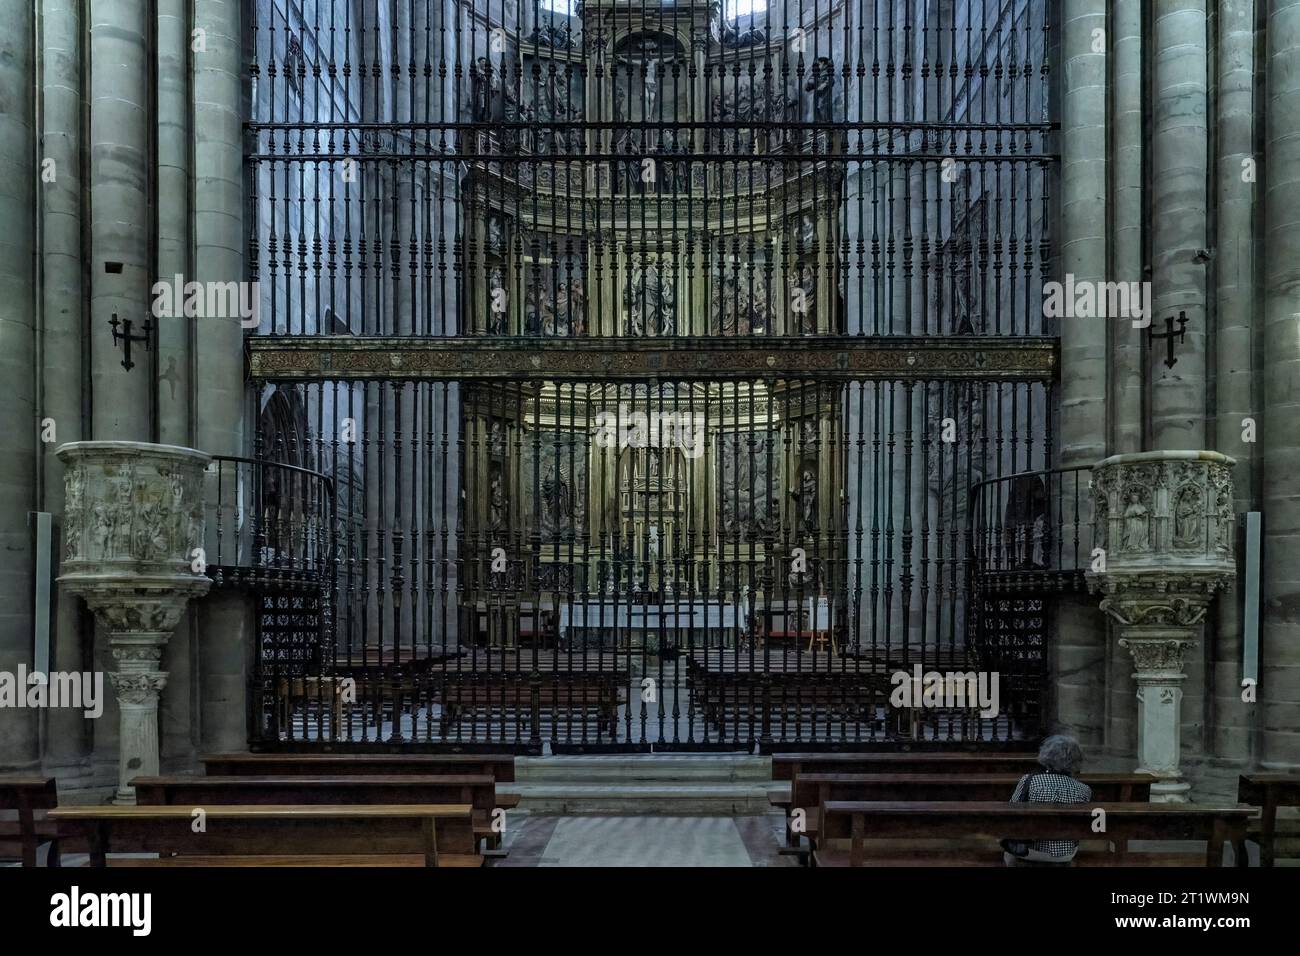 L'autel principal et ses belles fenêtres gothiques avec le retable Renaissance de Giraldo de Merlo, dédié à l'Assomption de la Vierge. Banque D'Images